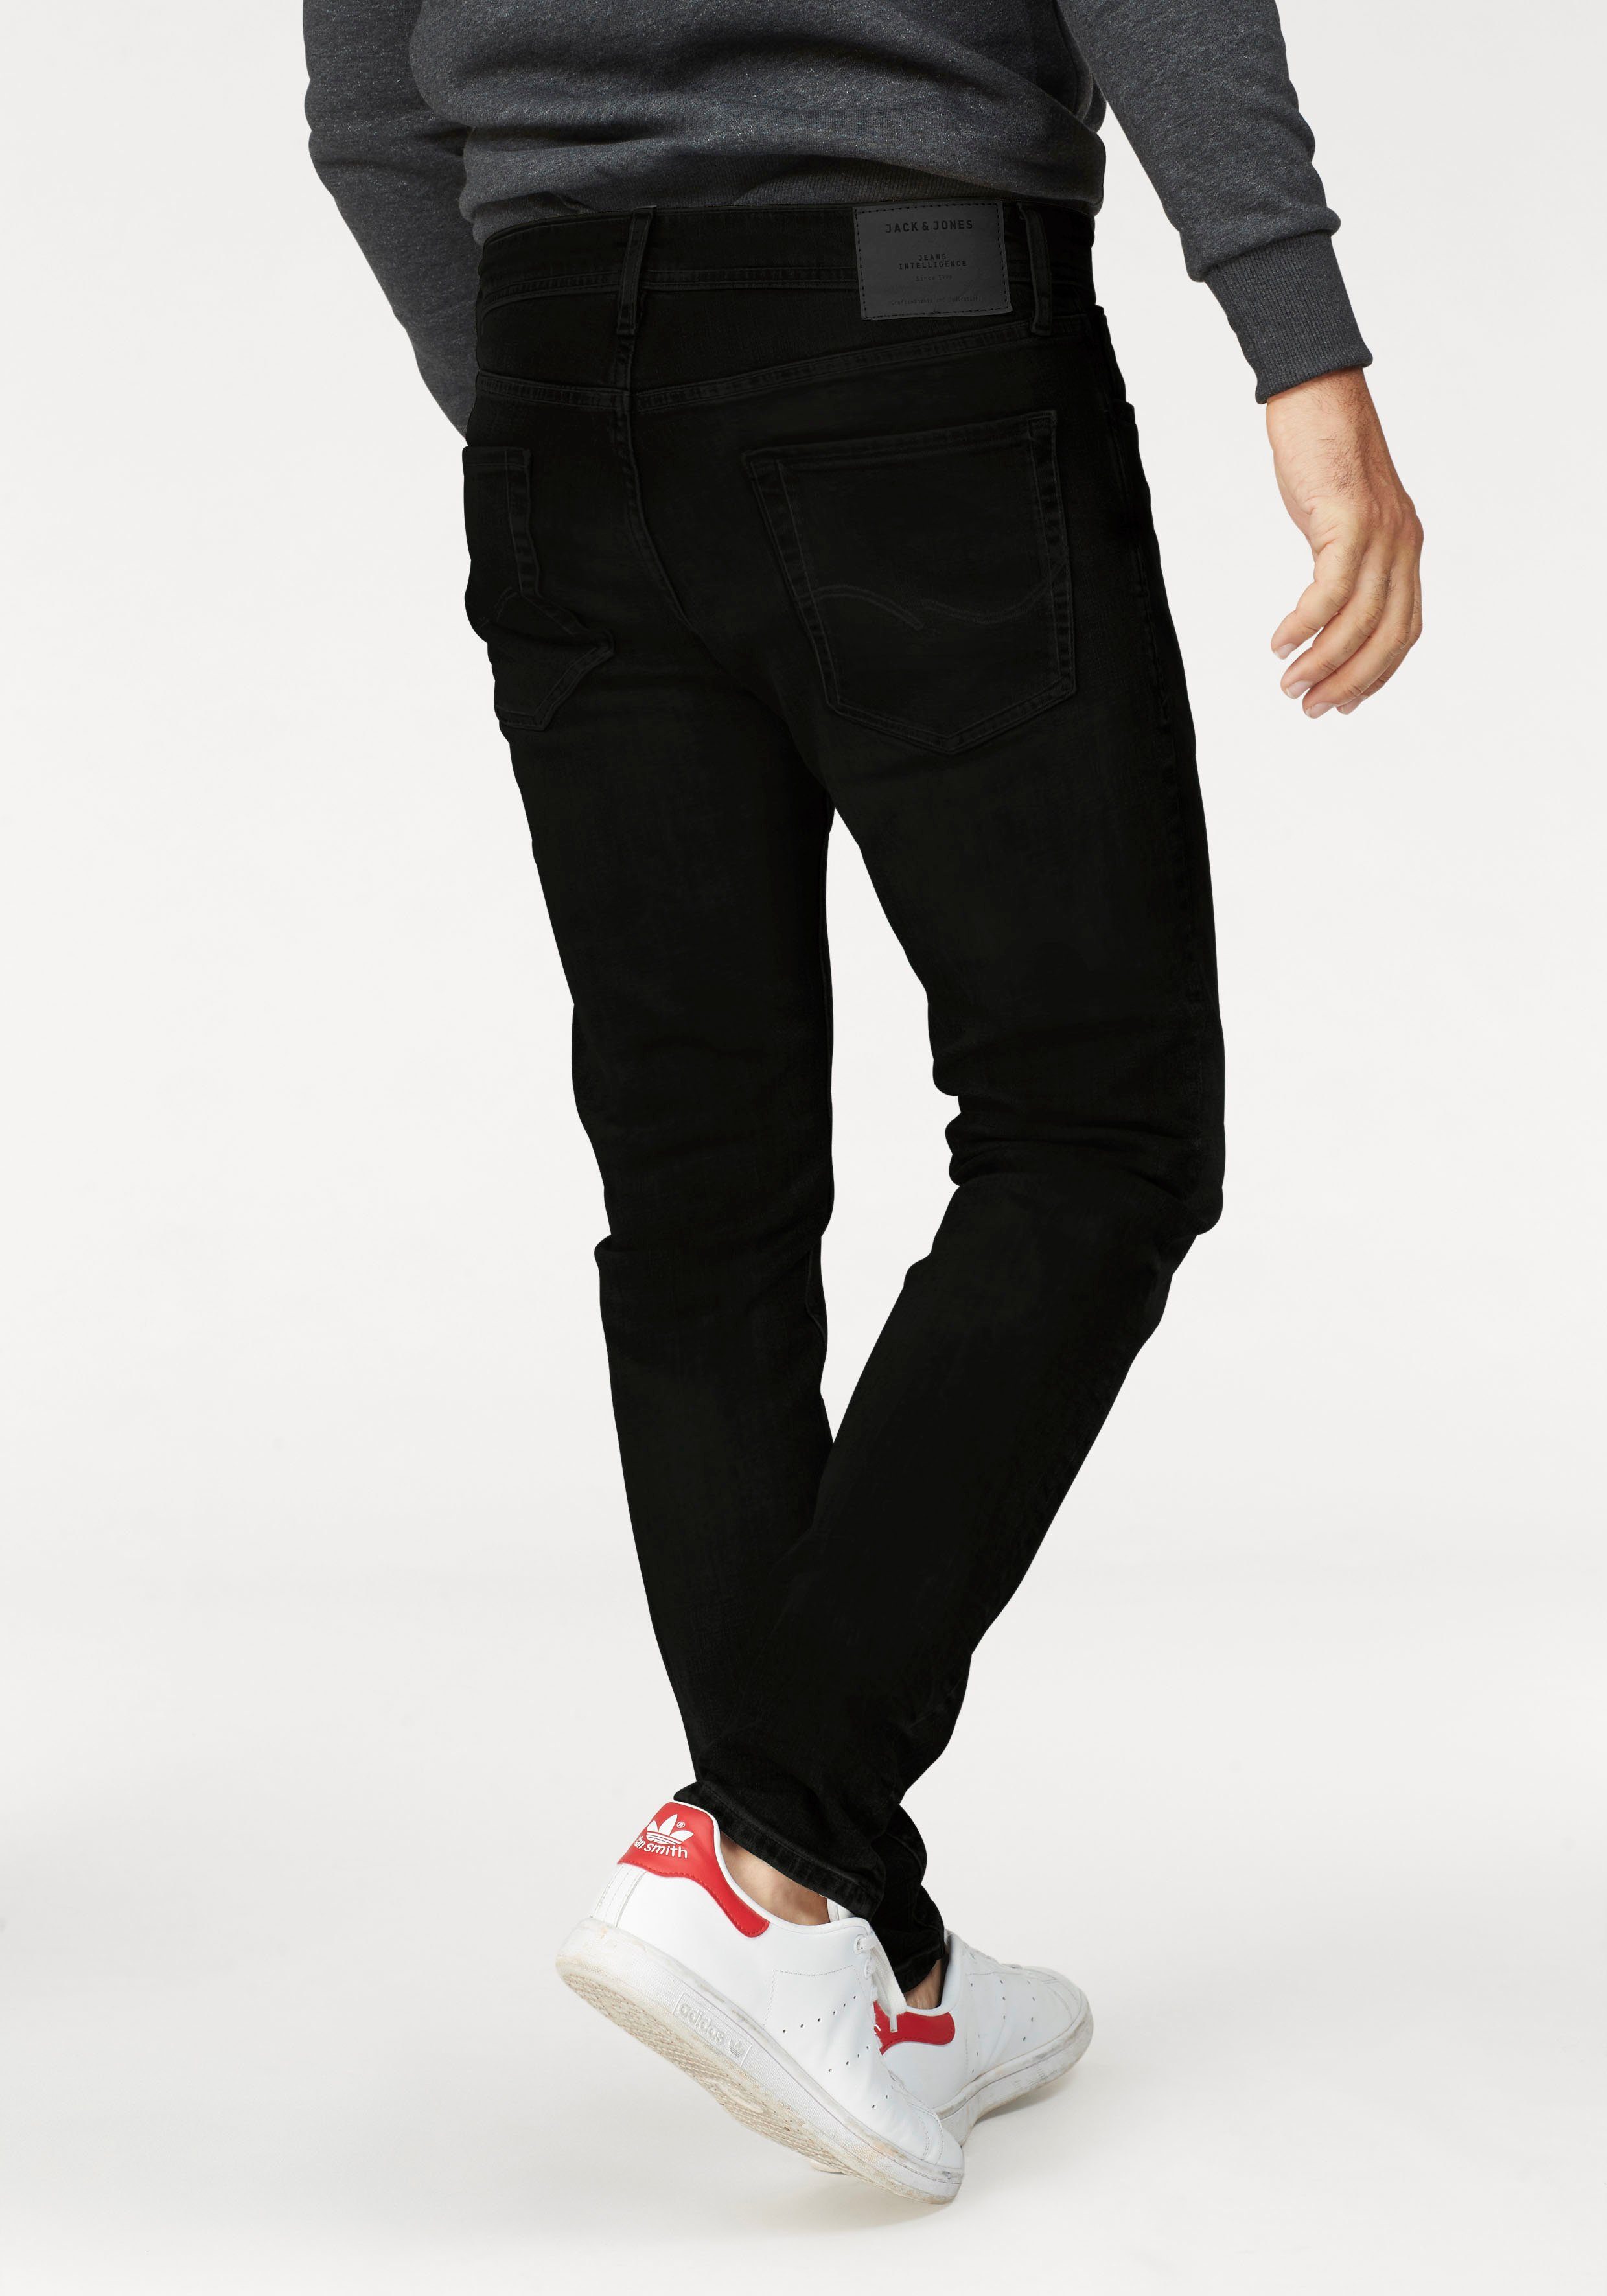 Jack & Jones Comfort-fit-Jeans »MIKE« online kaufen | OTTO